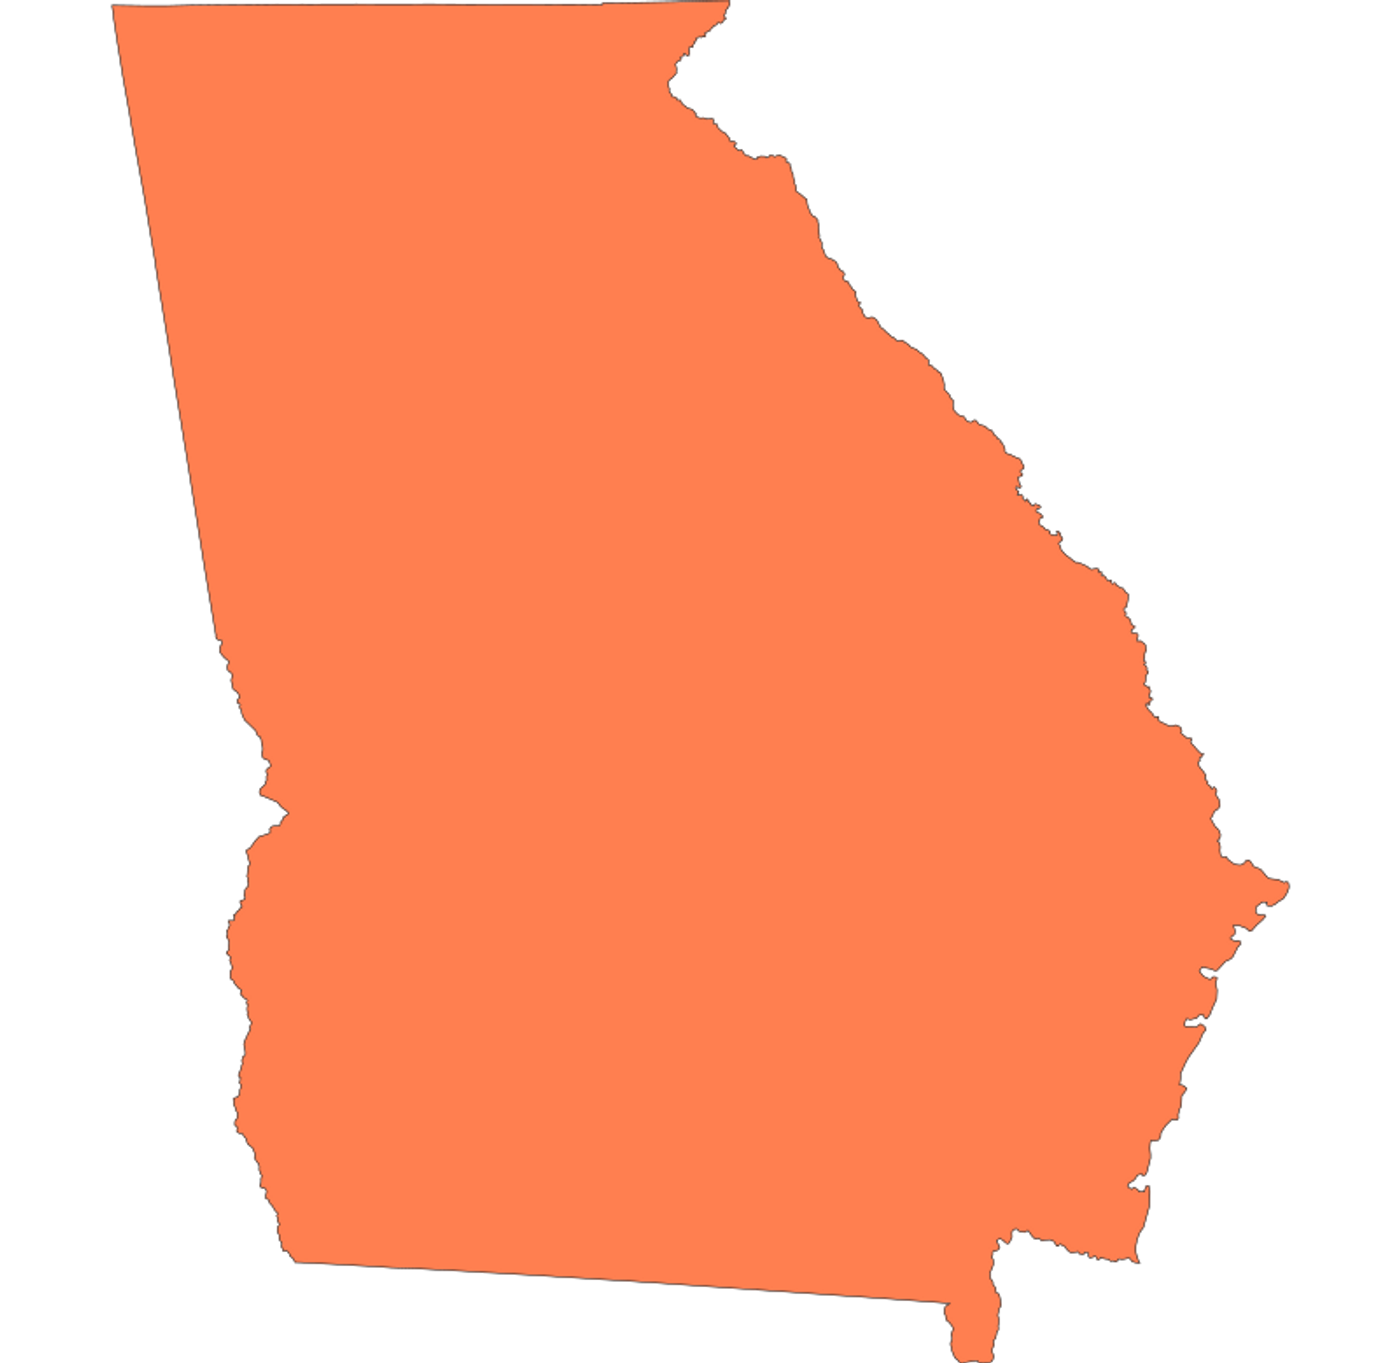 Georgia Outline